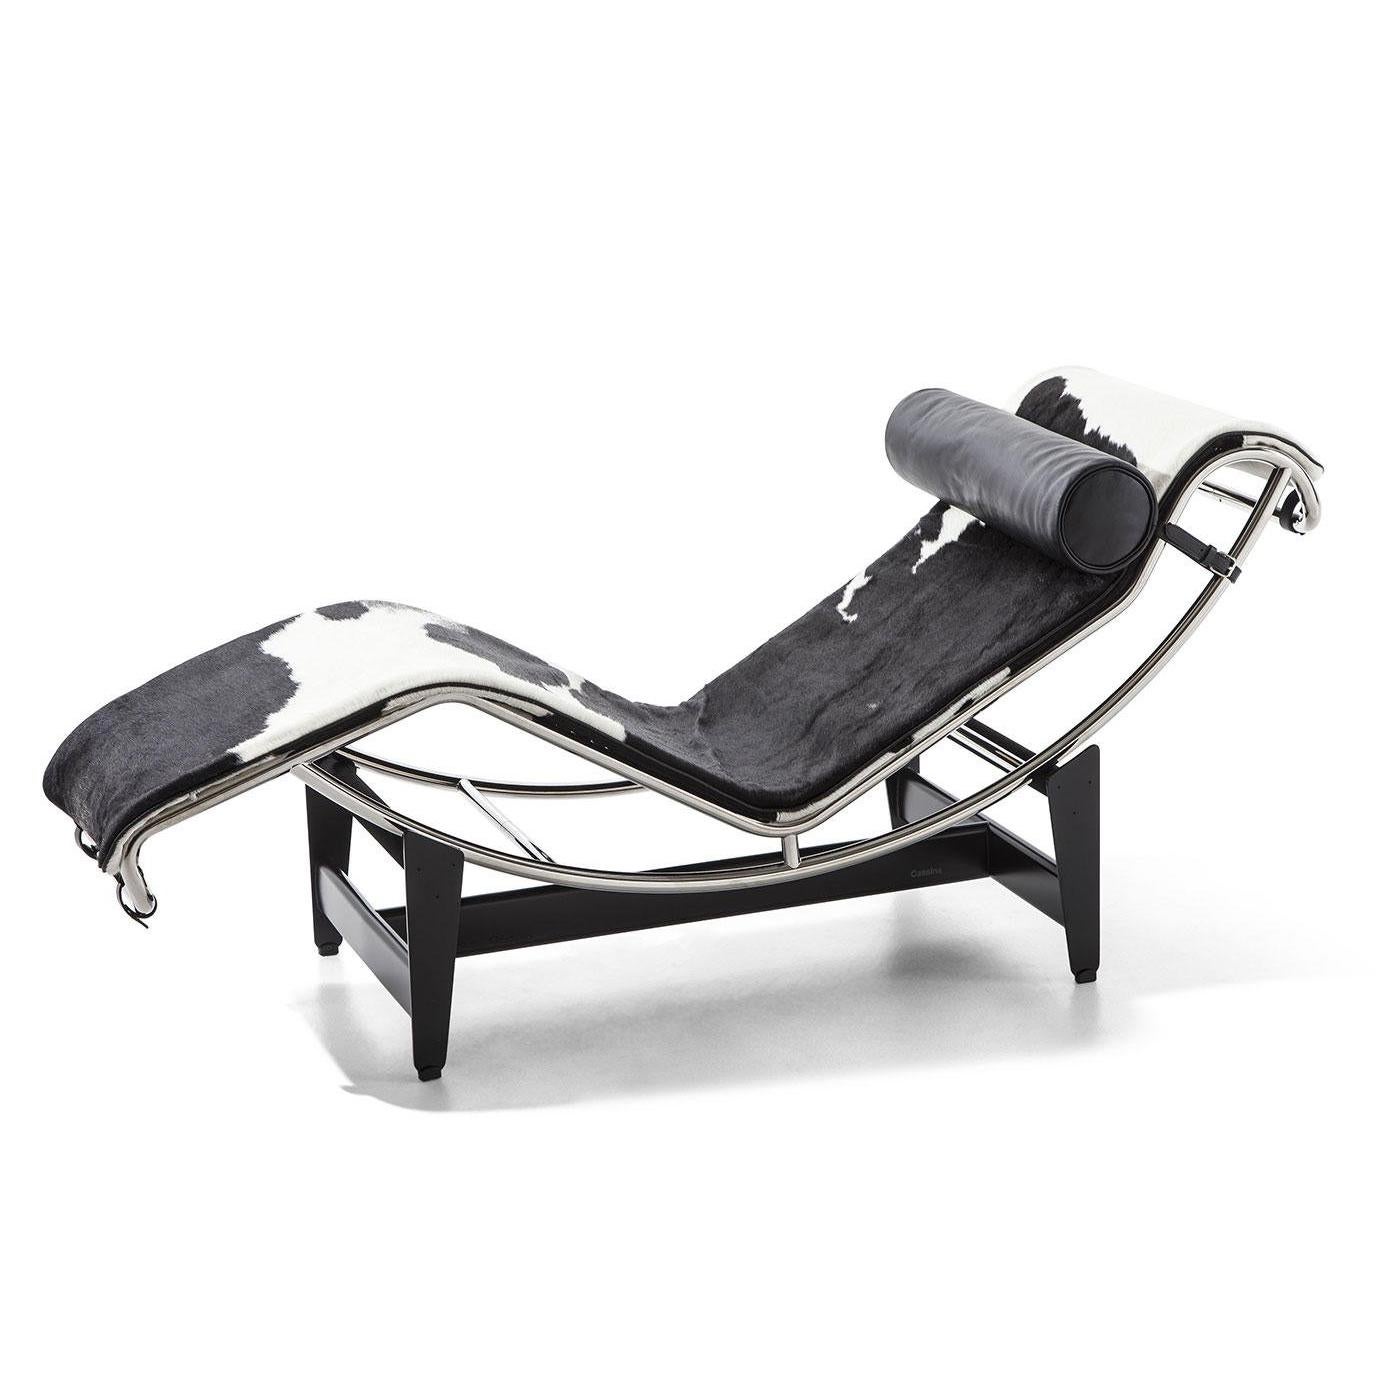 Chaise longue conçue par Le Corbusier, Pierre Jeanneret, Charlotte Perriand en 1928.
Fabriqué par Cassina en Italie.

Chaise longue avec structure réglable en acier chromé trivalent (CR3). Base en acier émaillé noir.

Conçue en 1928, cette